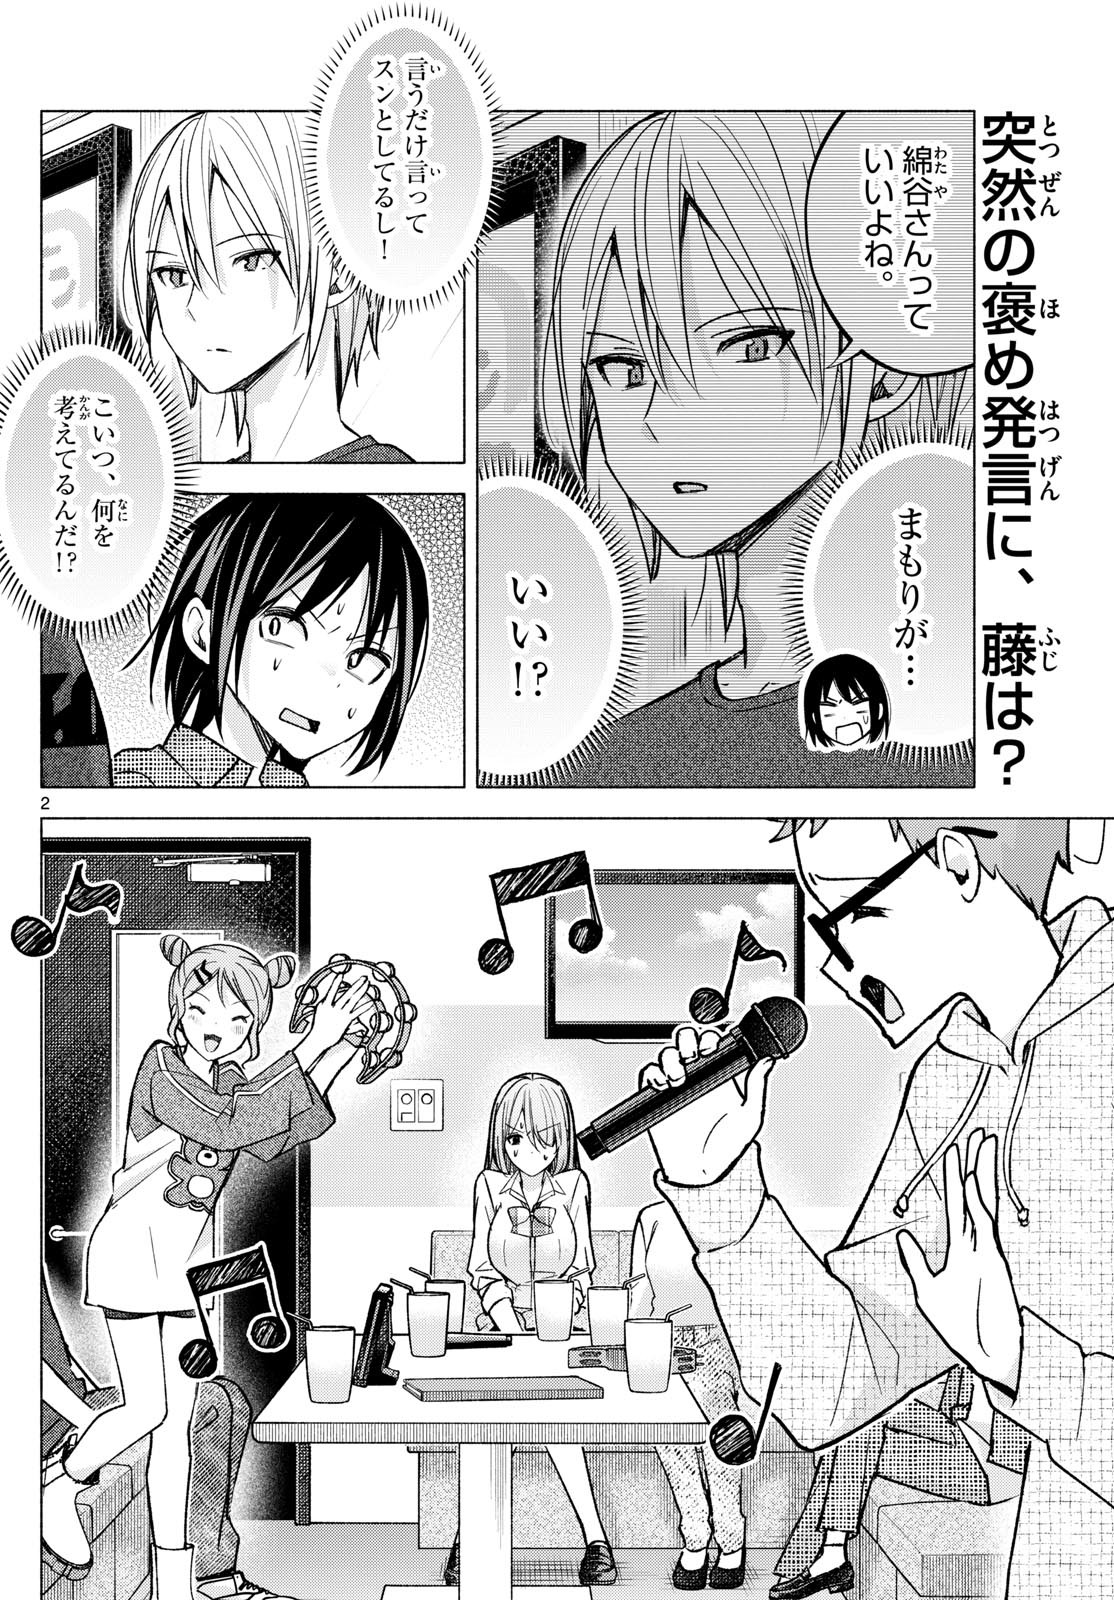 Kimi to Warui Koto ga Shitai - Chapter 054 - Page 2